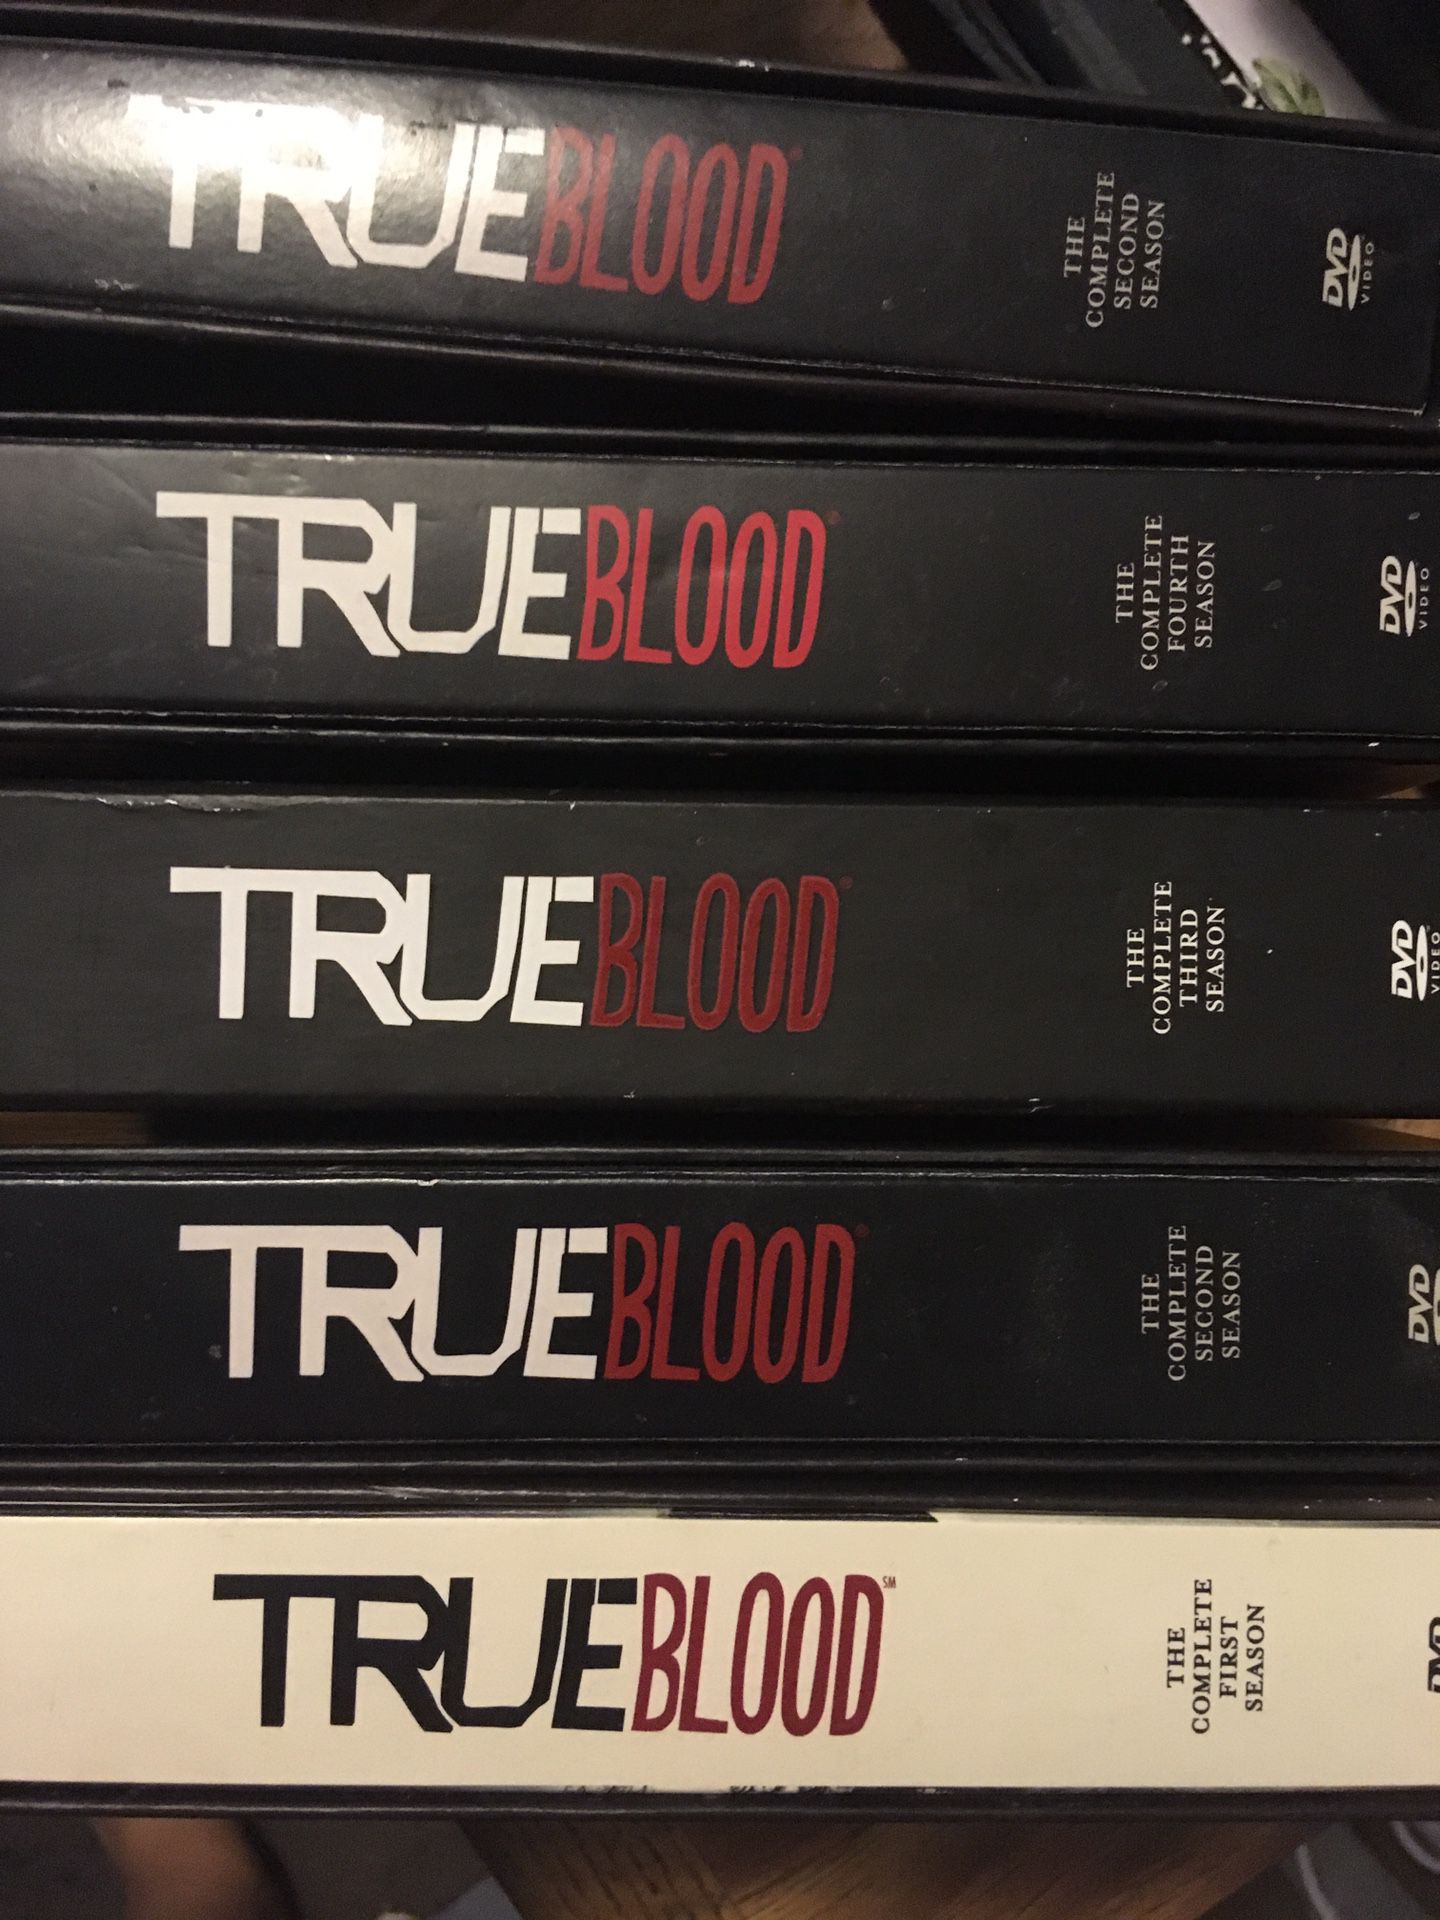 True Blood DVD set - seasons 1-4